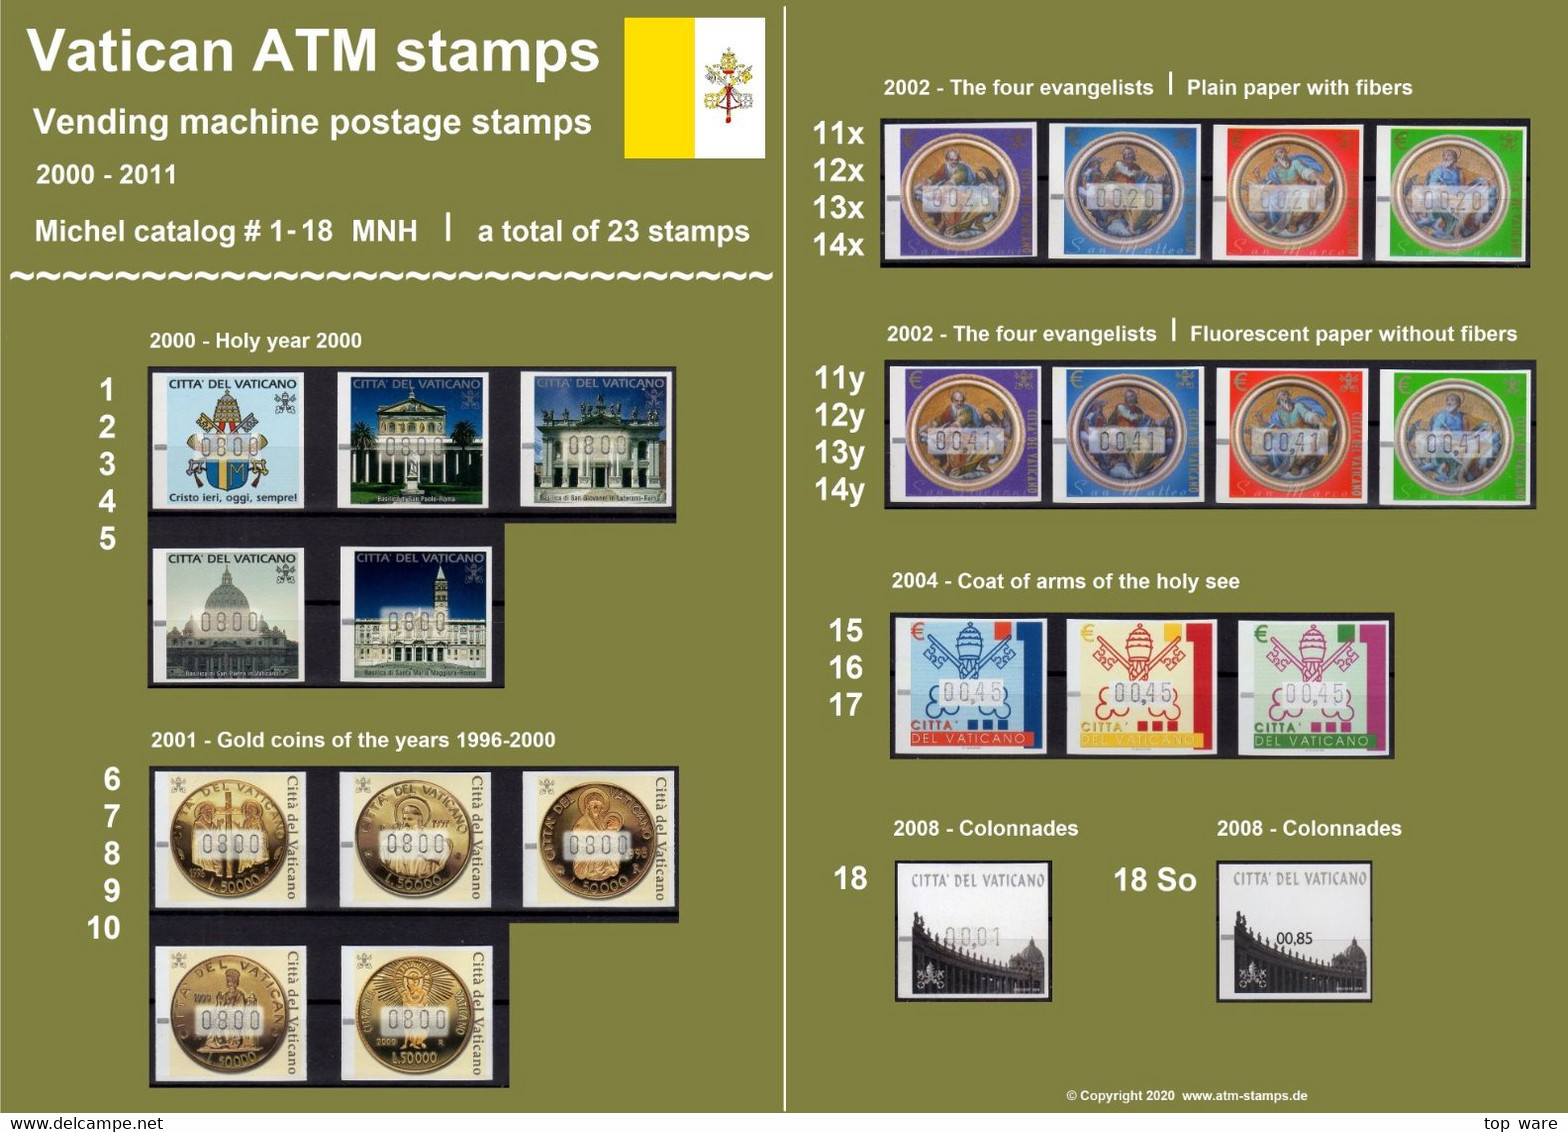 2000 Vaticano Vatikan ATM Stamps 1-18 Complete Collection / MNH / Frama Kiosk CVP Automatenmarken Automatici Etiquetas - Colecciones